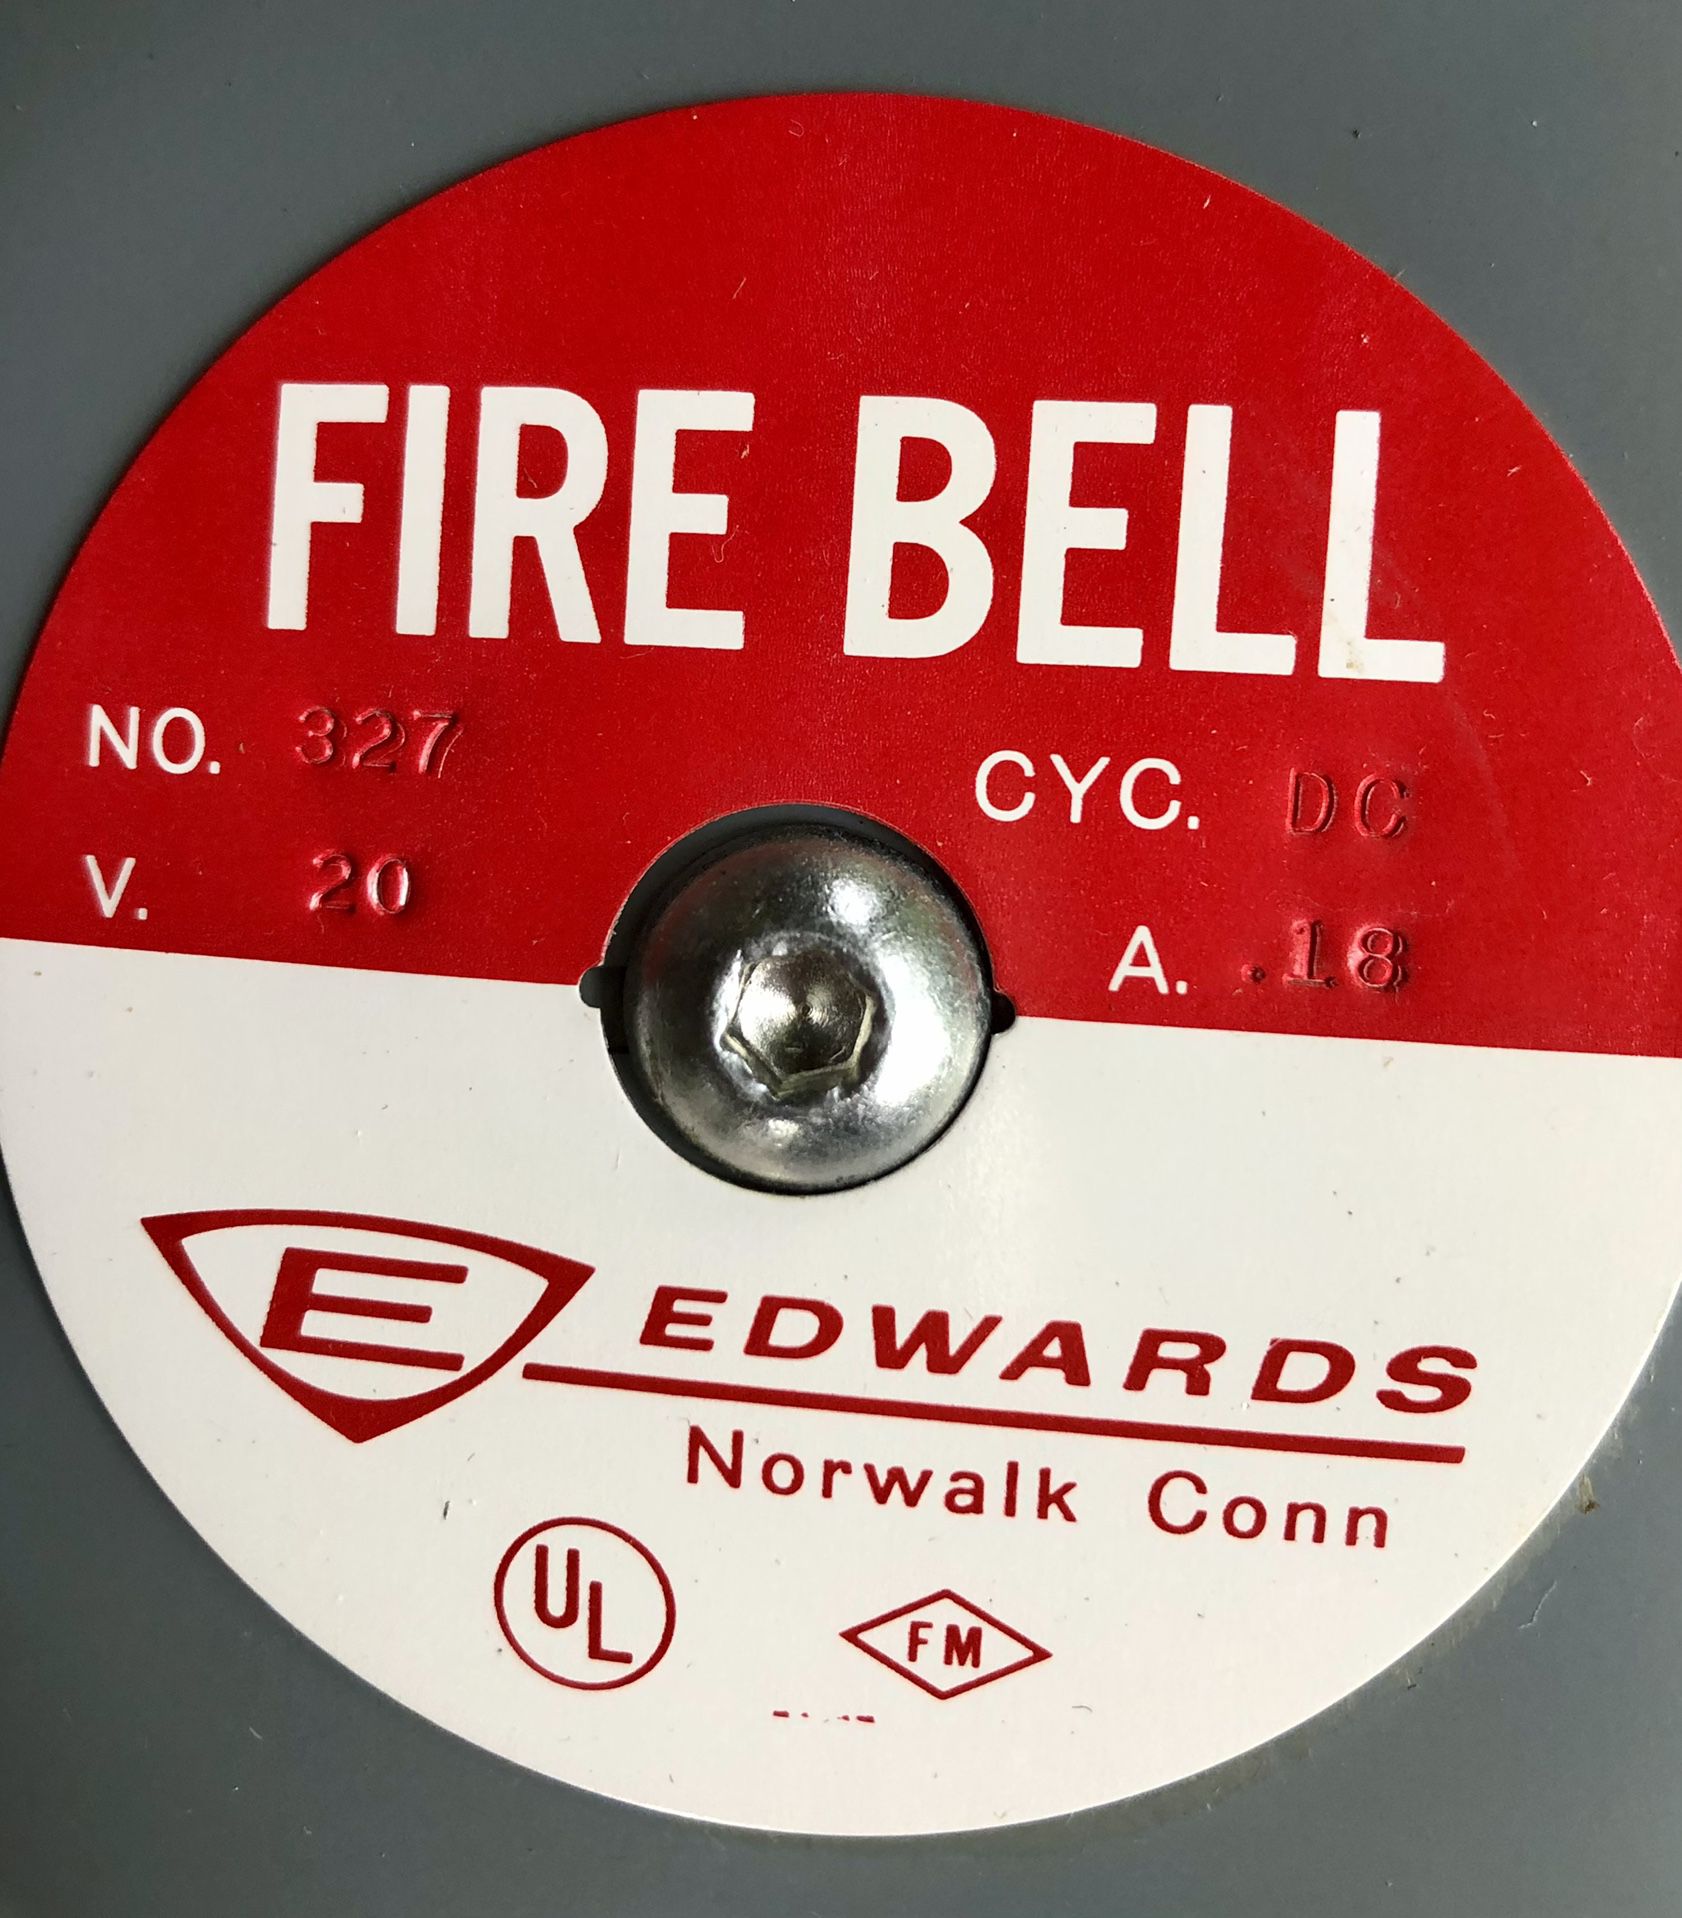 3 Edwards Fire  Bell - No.327  CYC. DC - V. 20  - A. .18